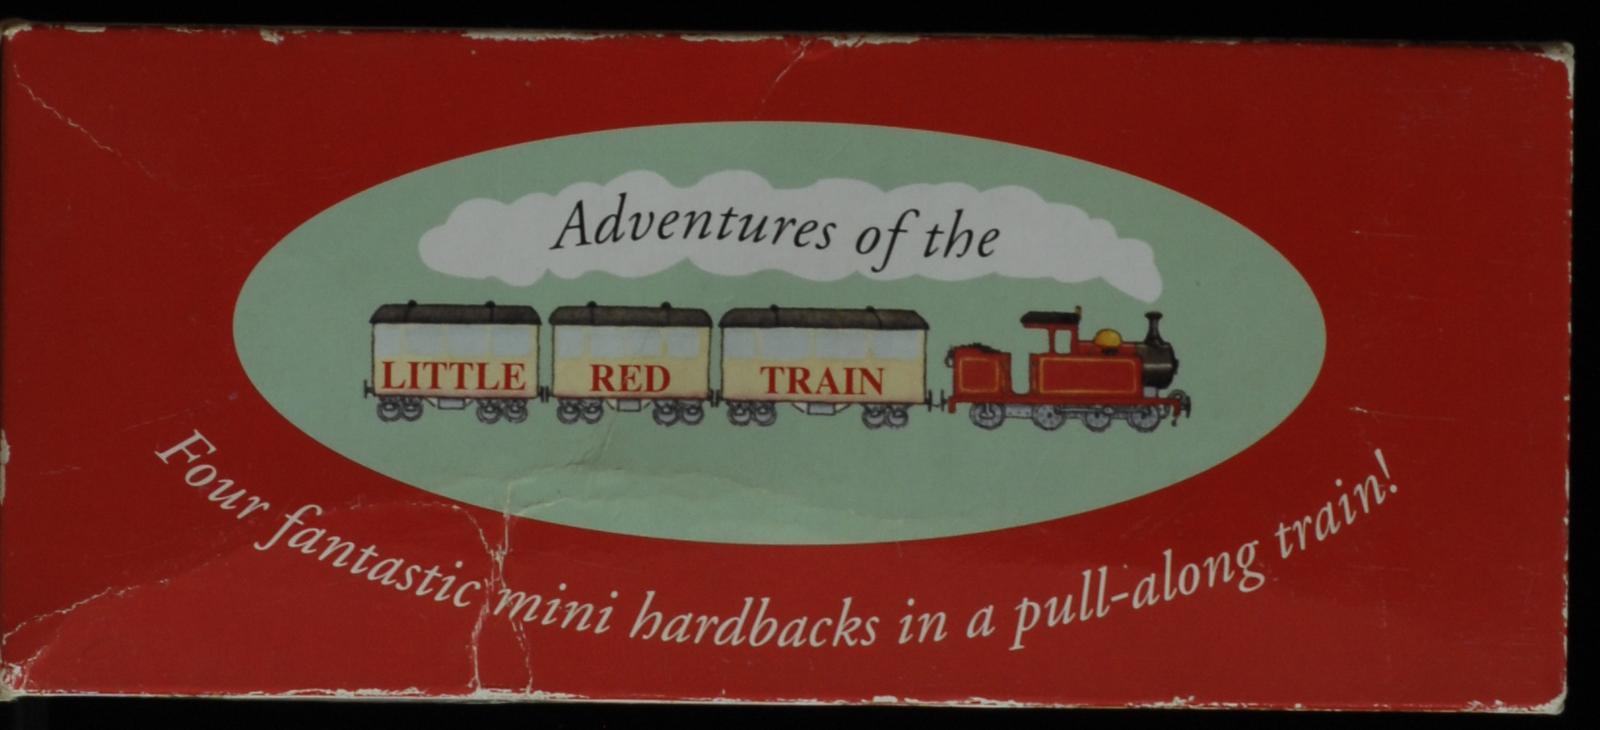 mbb005629b_-_Blathwayt_Benedict_-_Adventures_Of_The_Little_Red_Train_-_BENEDICT_BLATHWAYT.jpg